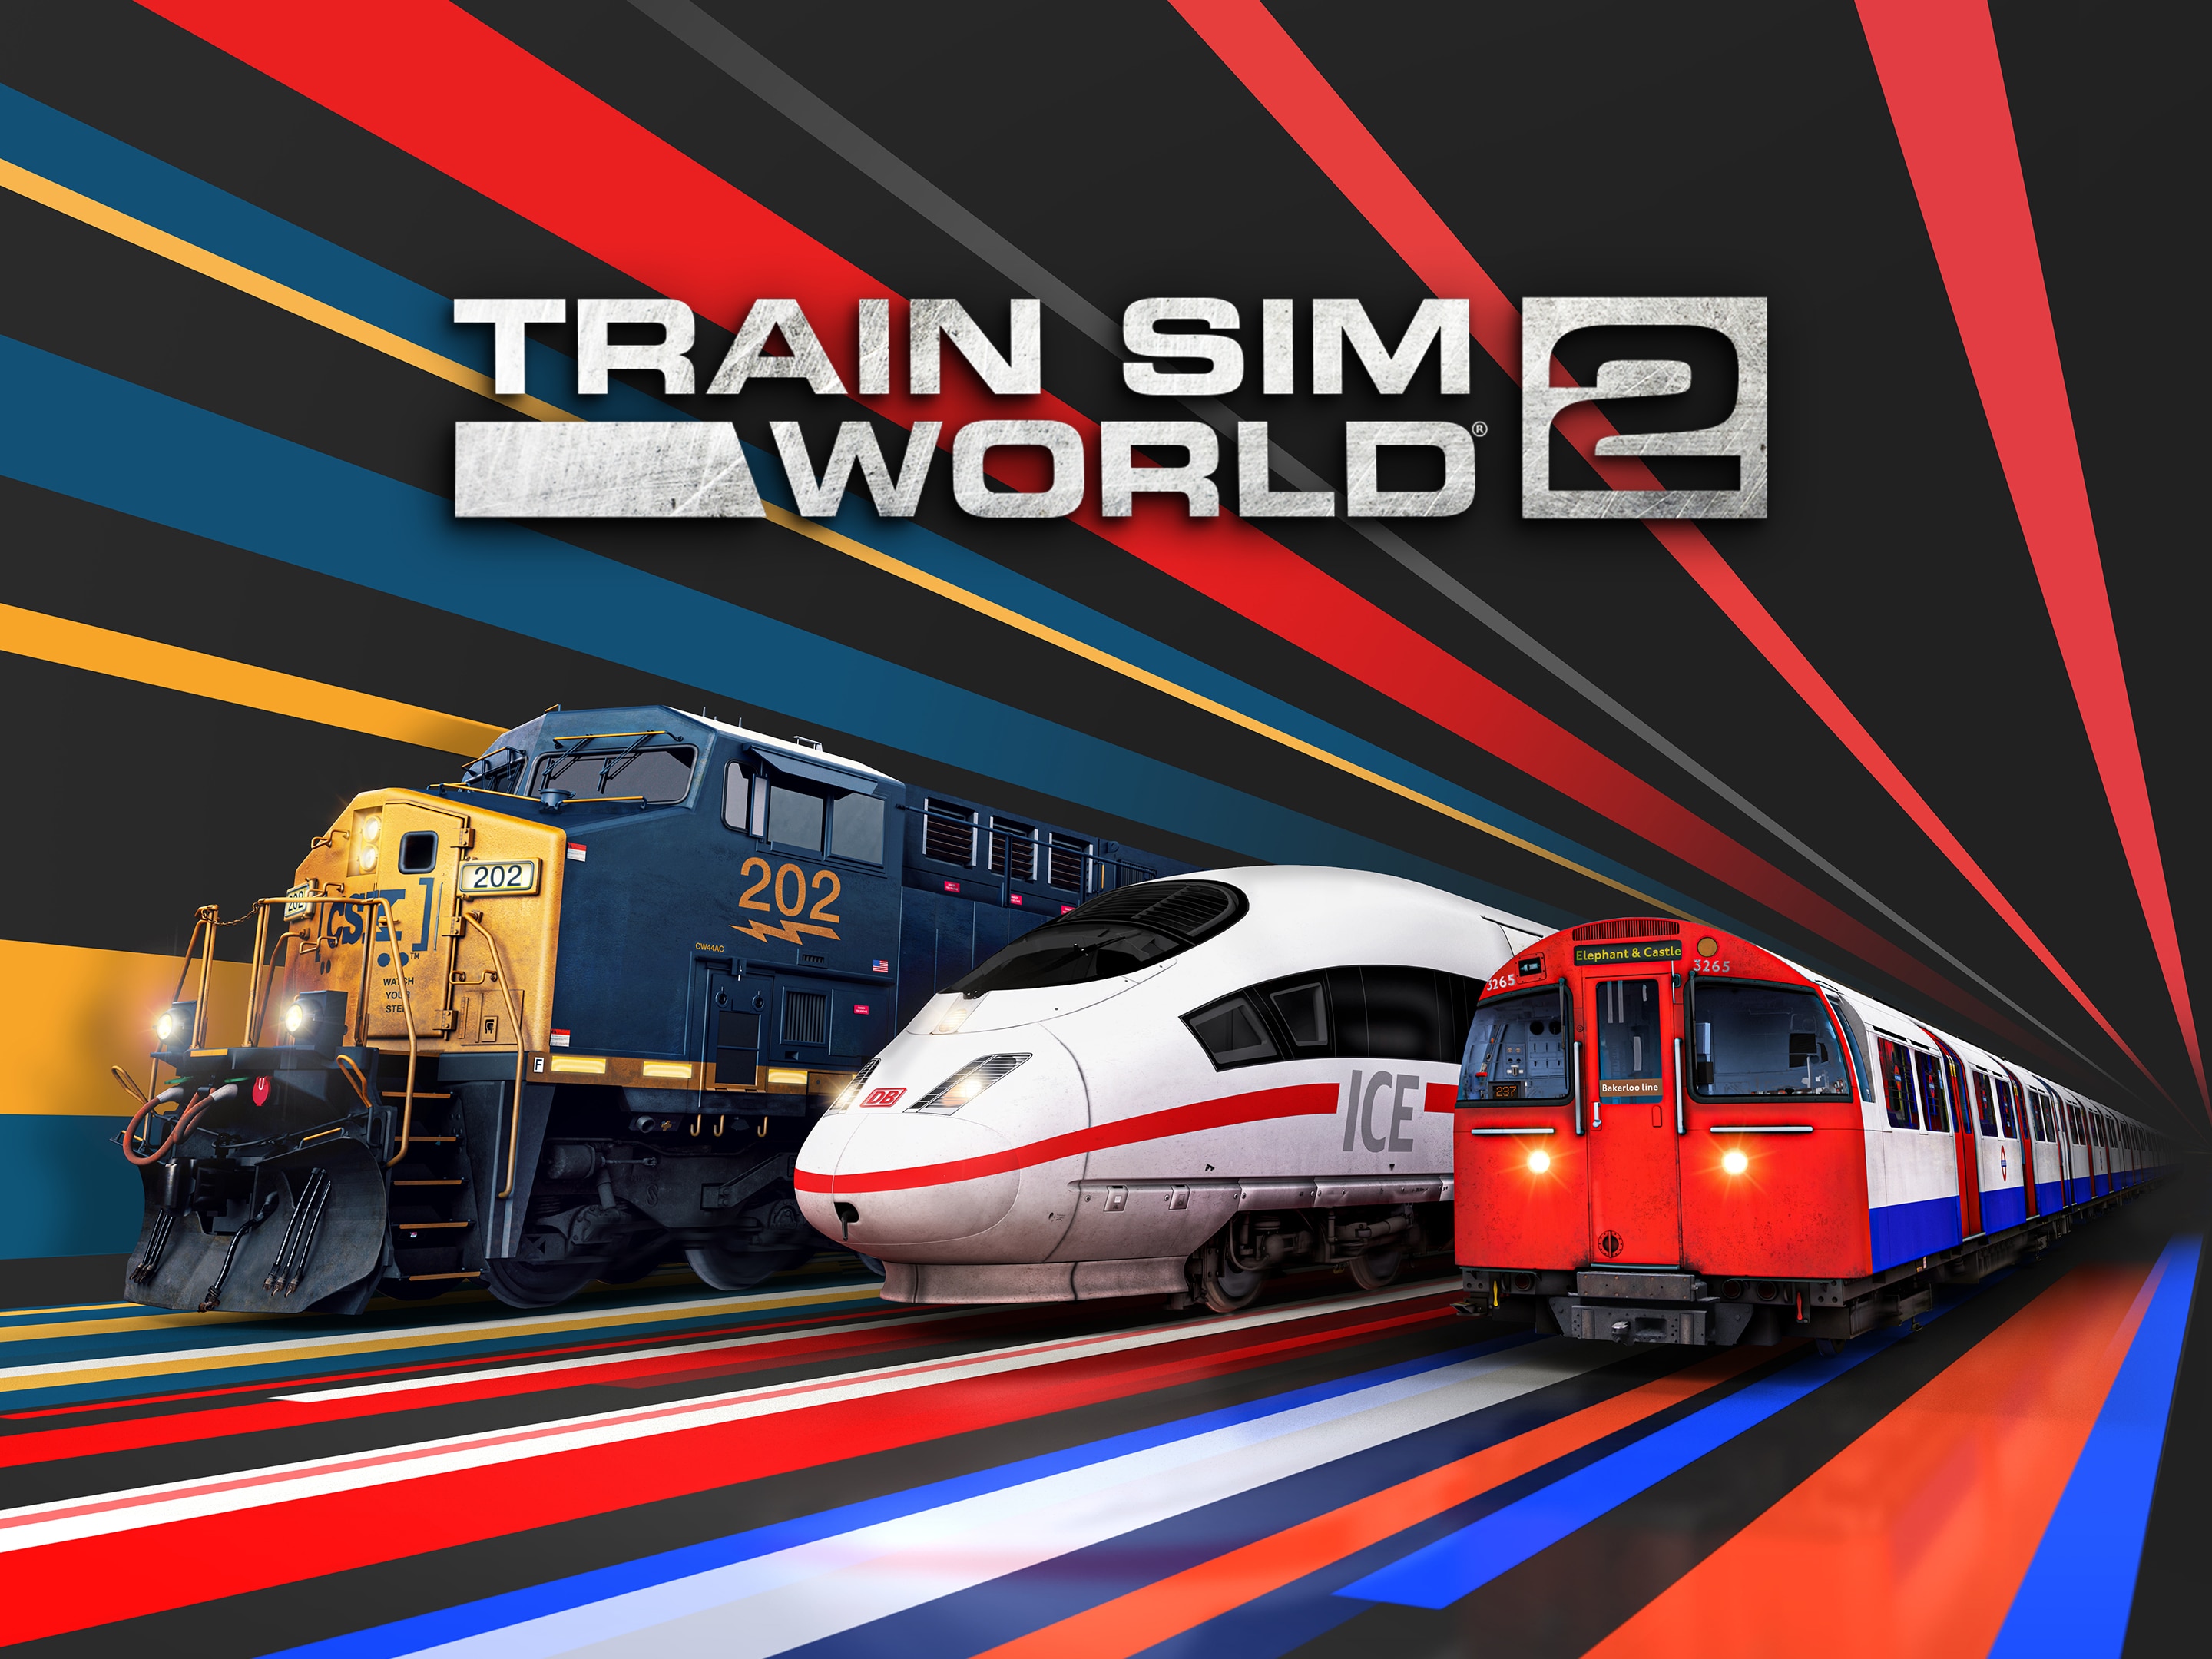 Descargar fondos de escritorio de Train Sim World 2 HD